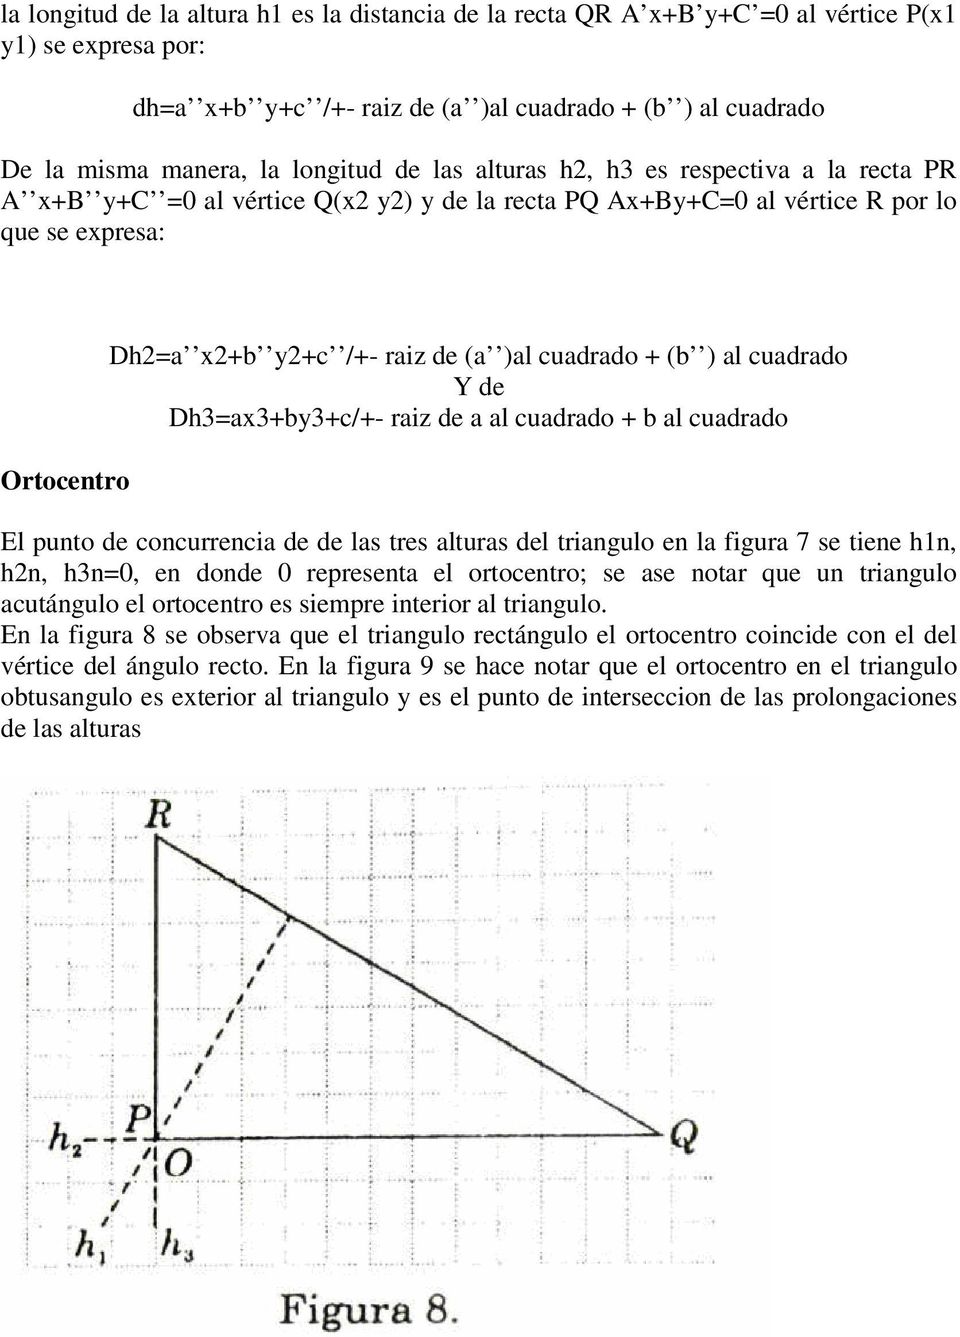 ) al cuadrado Y de Dh3=ax3+by3+c/+- raiz de a al cuadrado + b al cuadrado El punto de concurrencia de de las tres alturas del triangulo en la figura 7 se tiene h1n, hn, h3n=0, en donde 0 representa